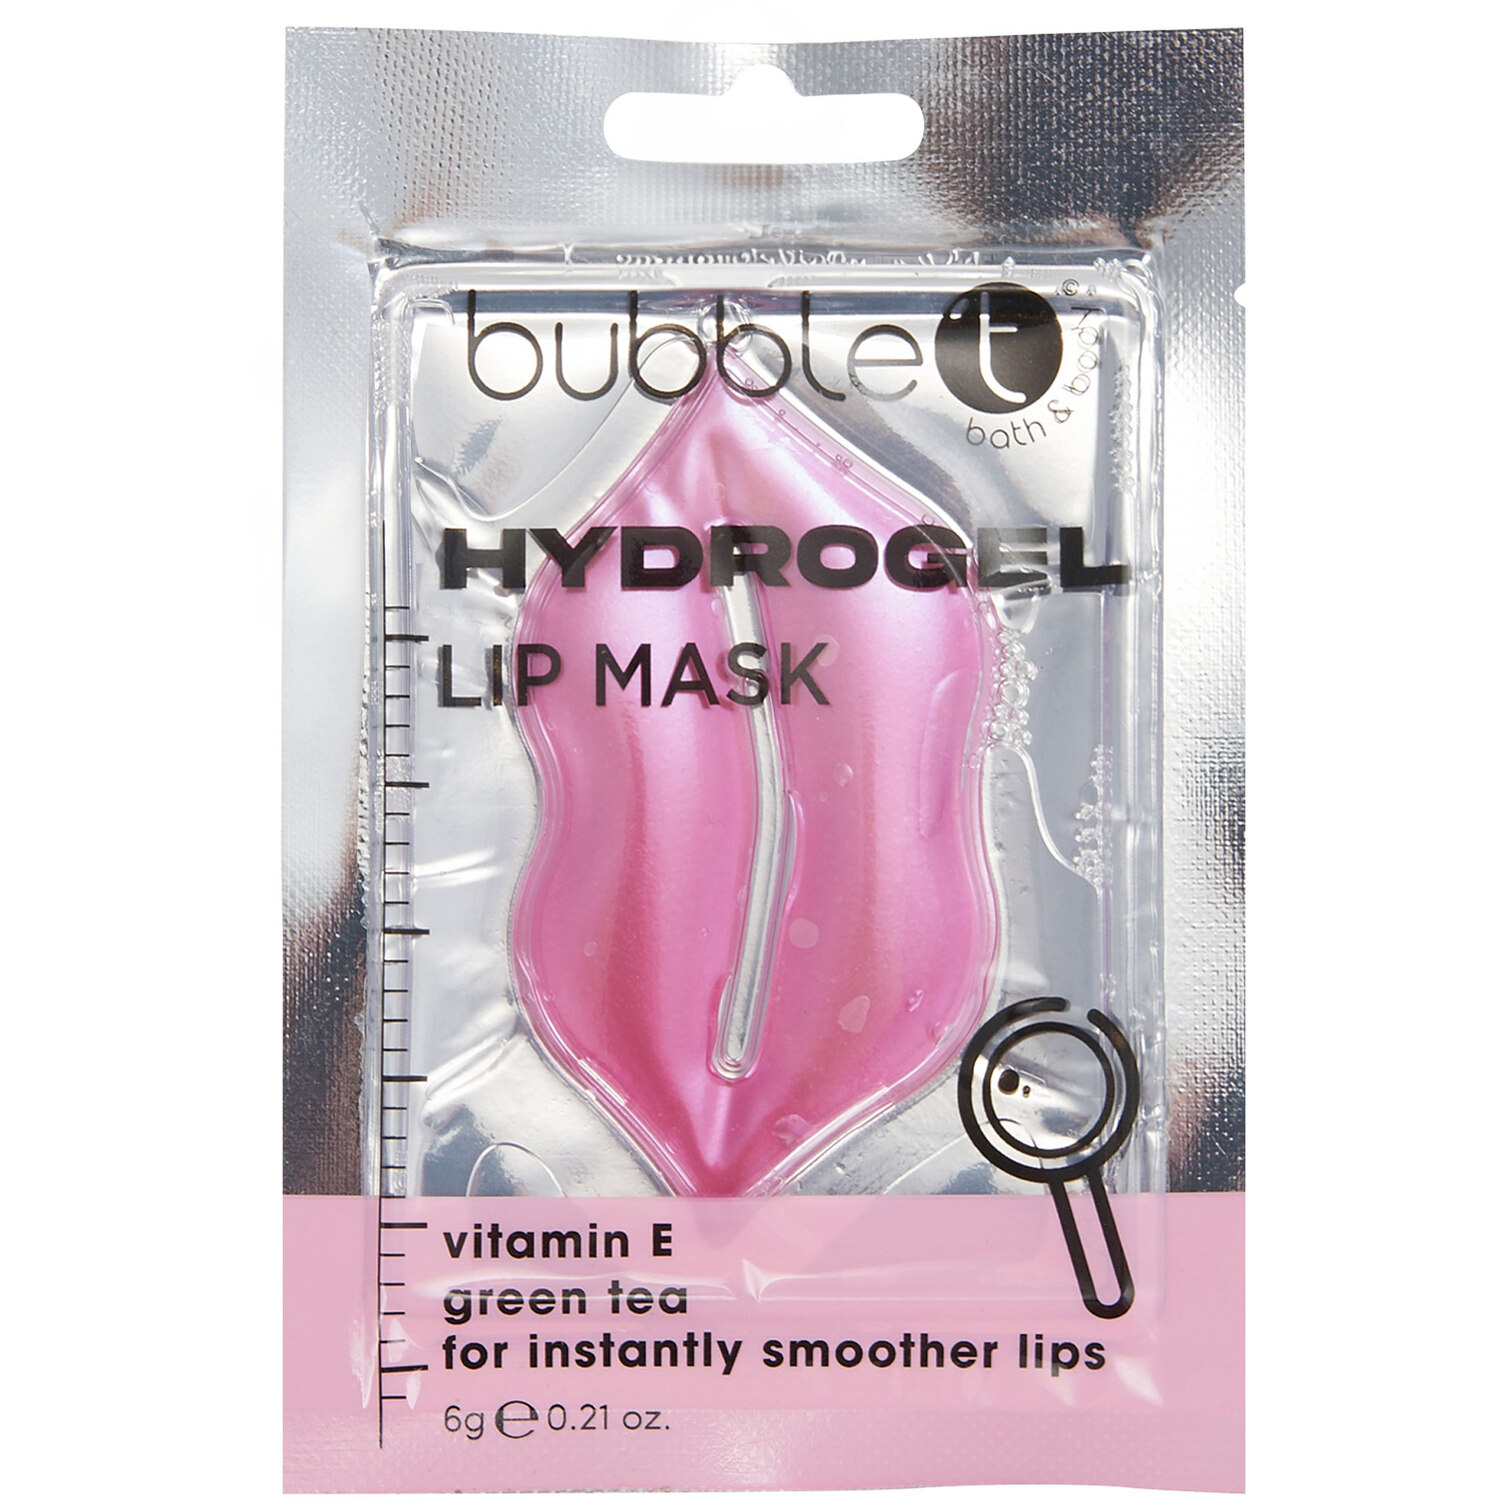 Bubble T Hydrogel Vitamin E Lip Mask Image